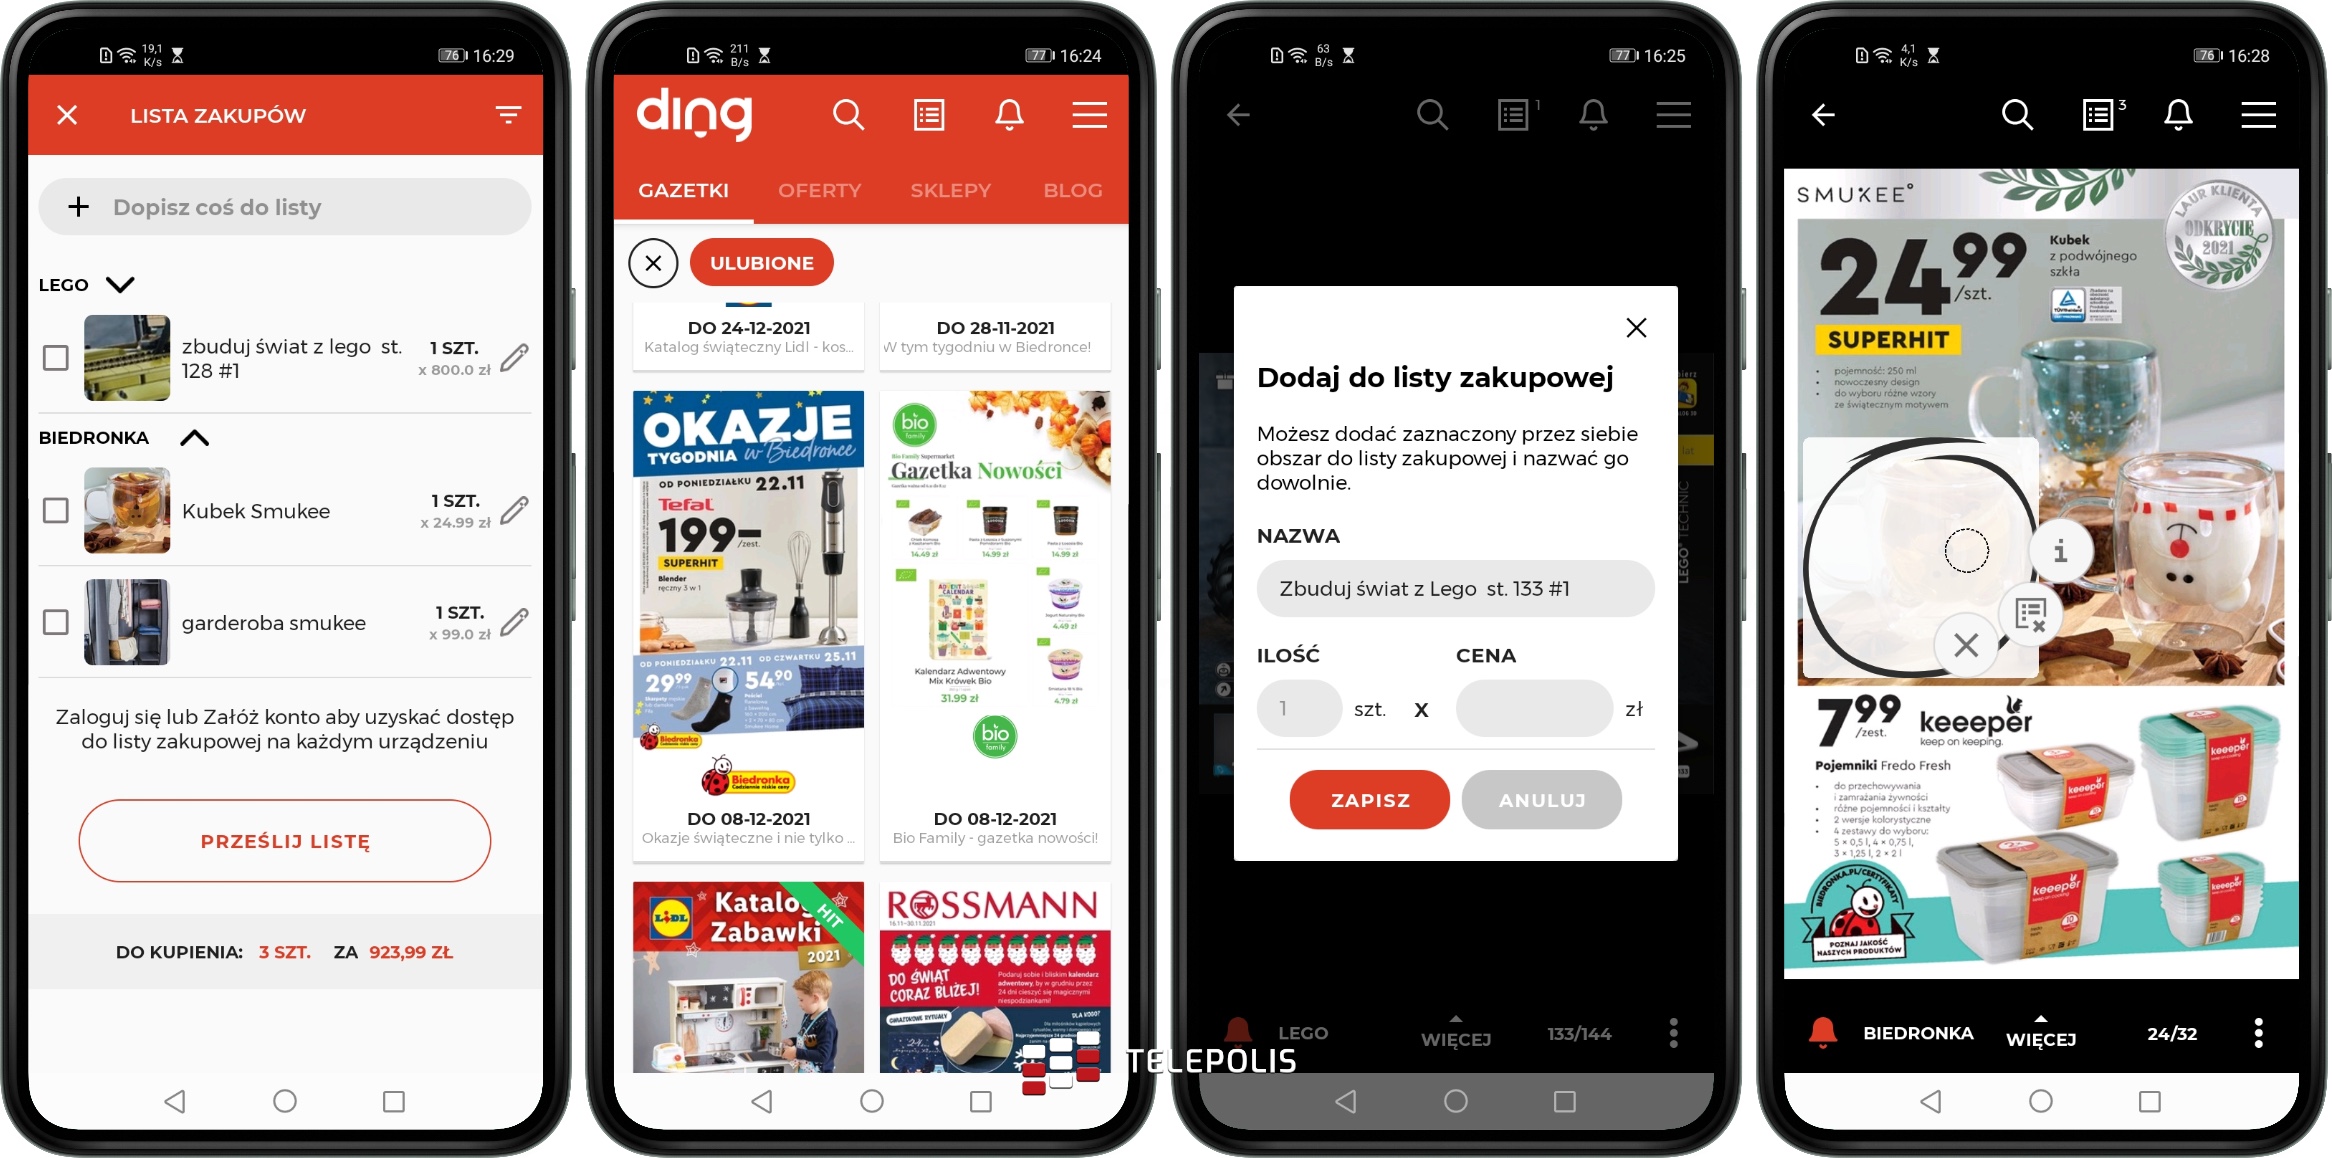 Ding – gazetki i powiadomienia o promocjach